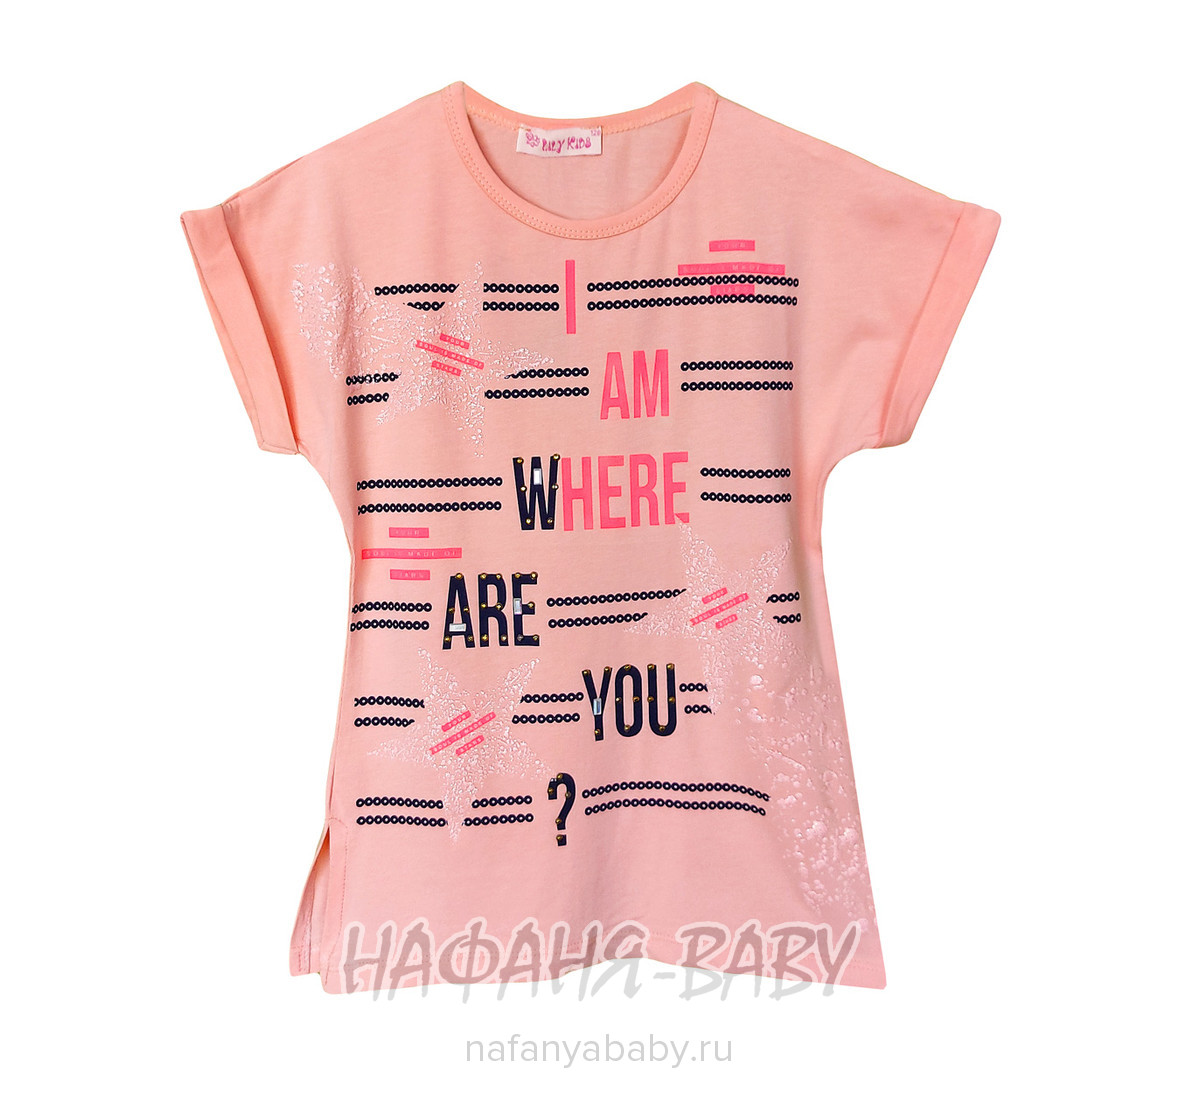 Подростковая  футболка для девочки LILY Kids, купить в интернет магазине Нафаня. арт: 5029.